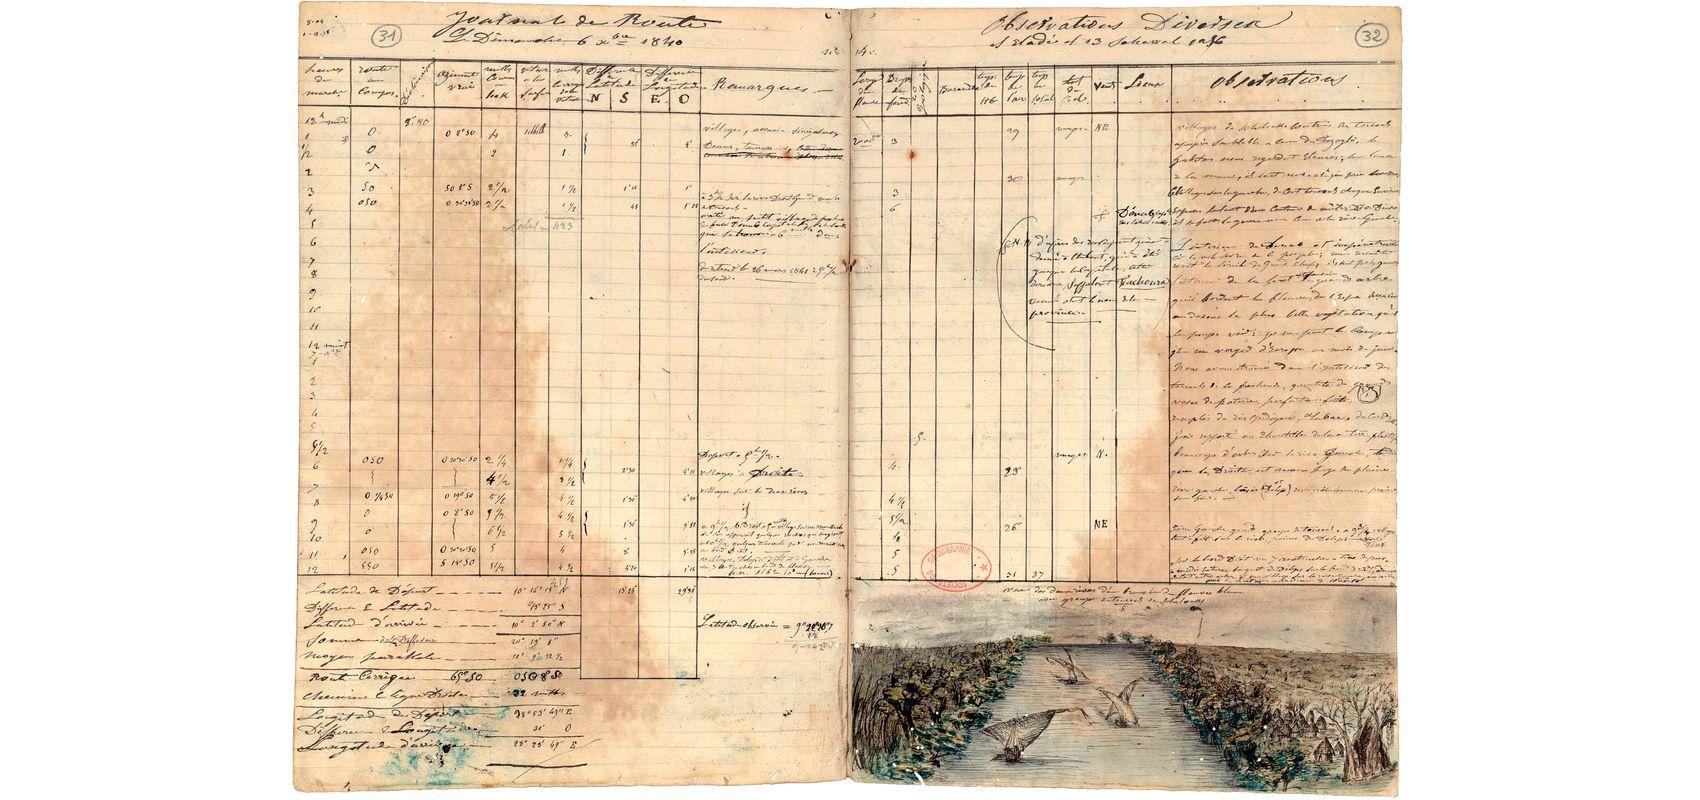 Journal de route de la 2e expédition, aller et retour de Joseph Pons d’Arnaud - 1840-1841 - BnF / Société de géographie, SG COLIS- 20 (3387, 1) et SG COLIS-20 (3387, 2)